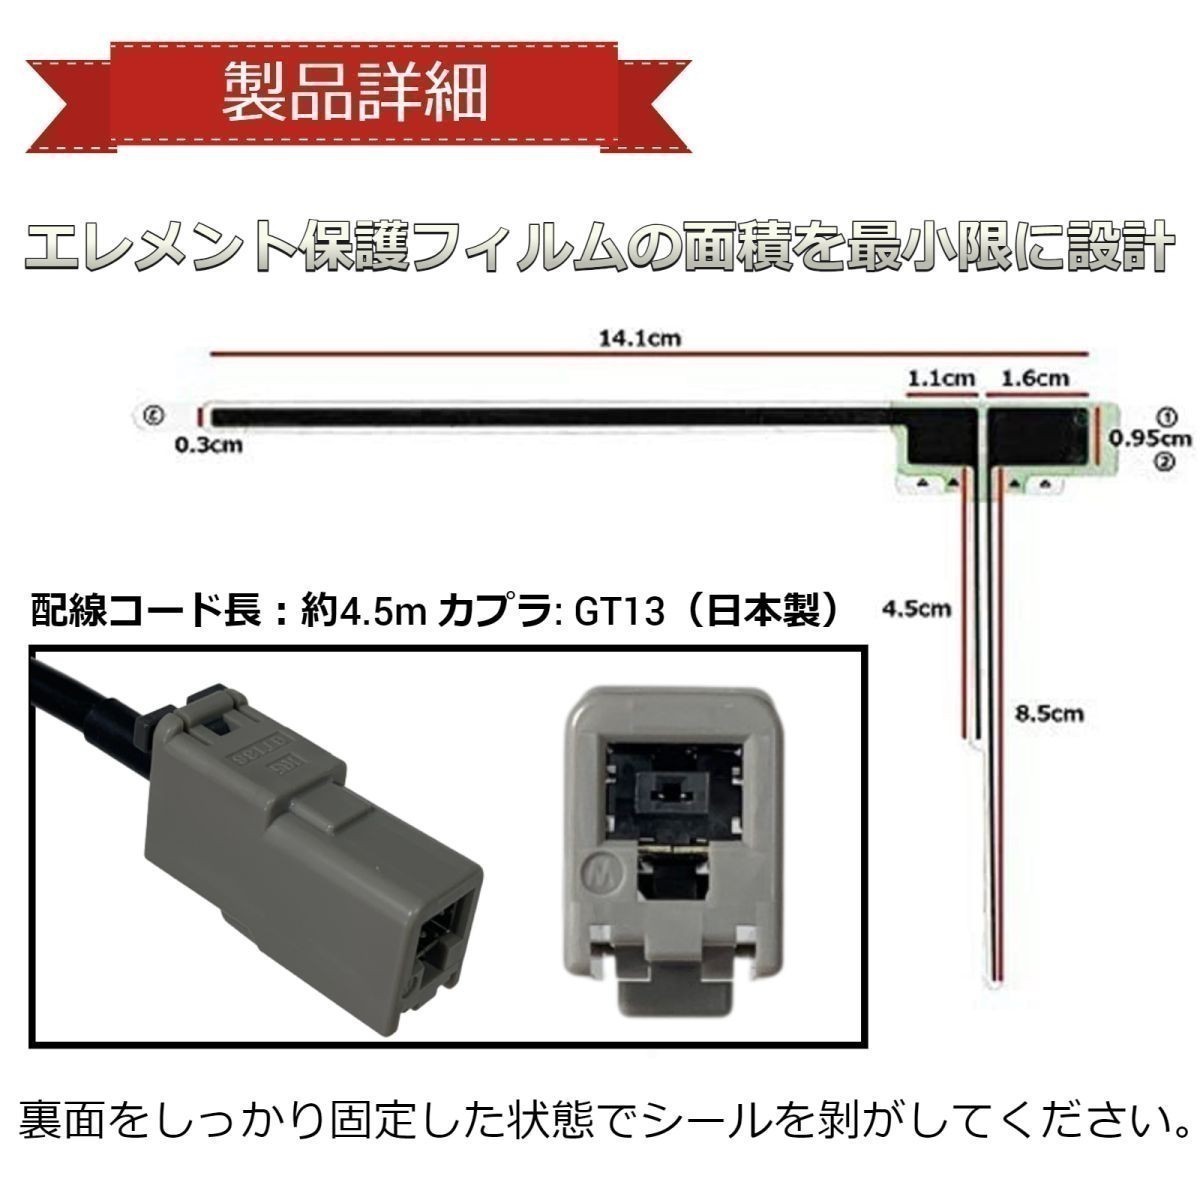 VXU-185NBi ホンダ 地デジ フィルムアンテナ GT13 カプラ コードセット 取説 ガラスクリーナー付 送料無料